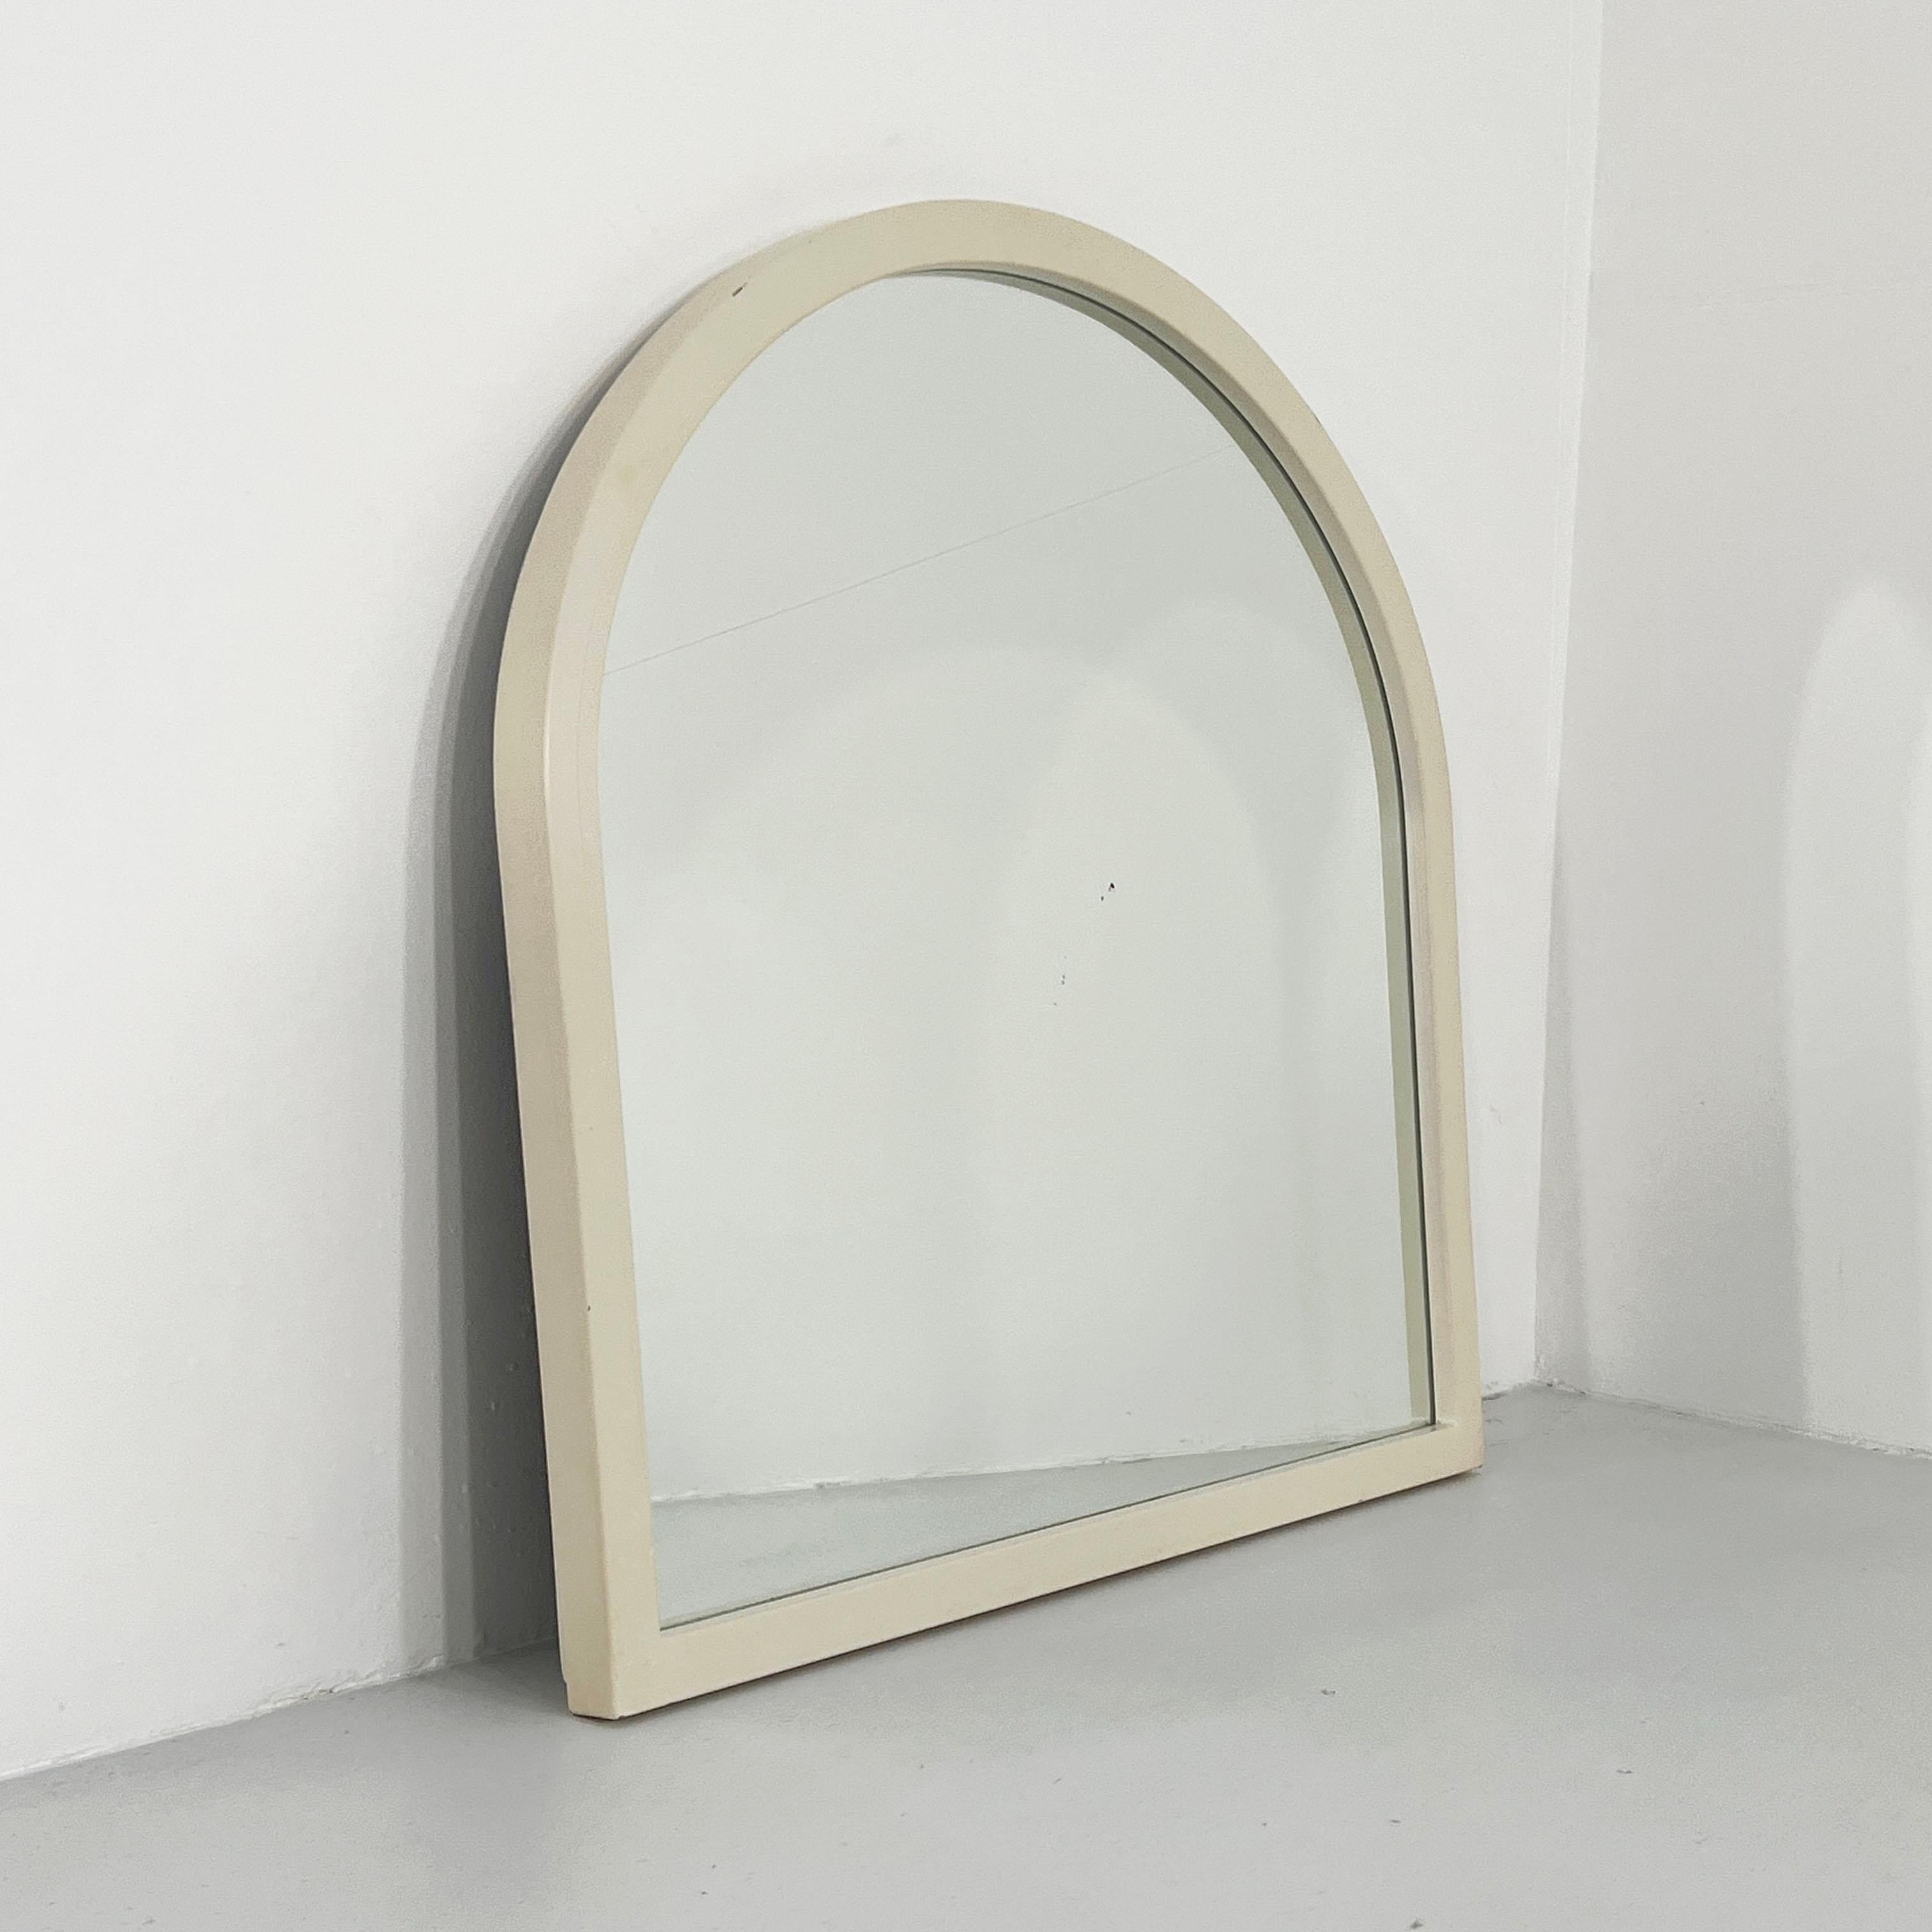 Post-Modern White Frame Mirror Model 4720 by Anna Castelli Ferrieri for Kartell, 1980s